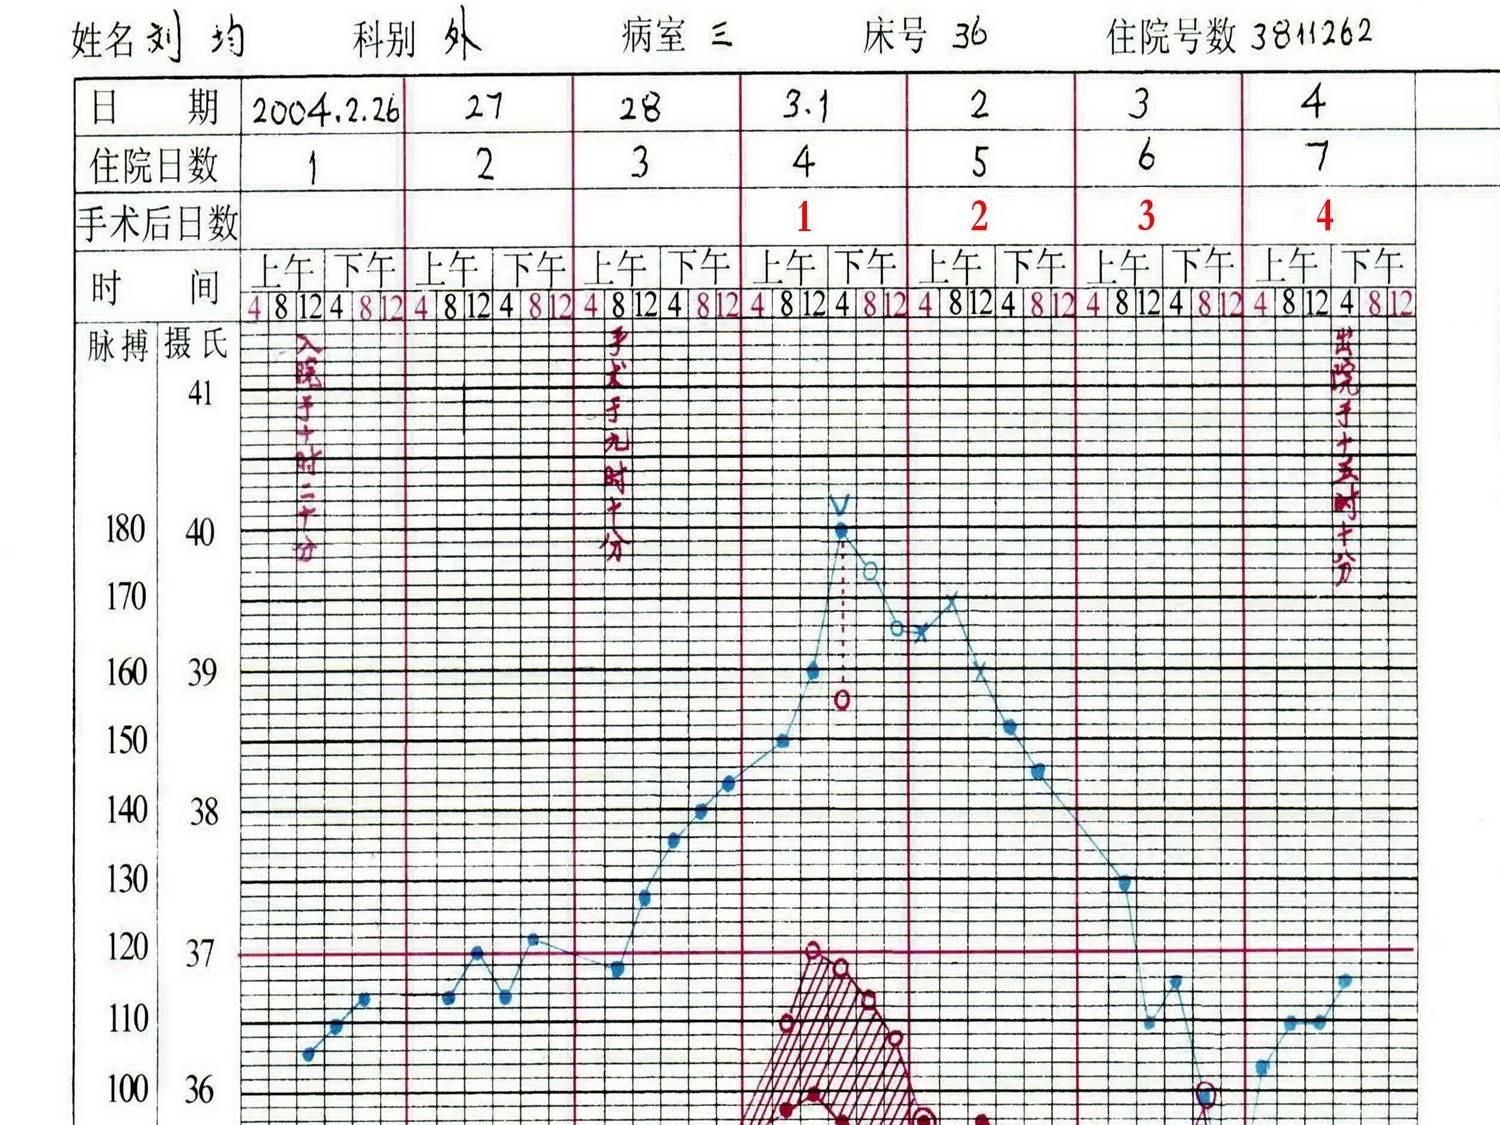 (2)将测量脉率,用红笔绘制于体温单相应时间格内,相邻脉率以红线相连